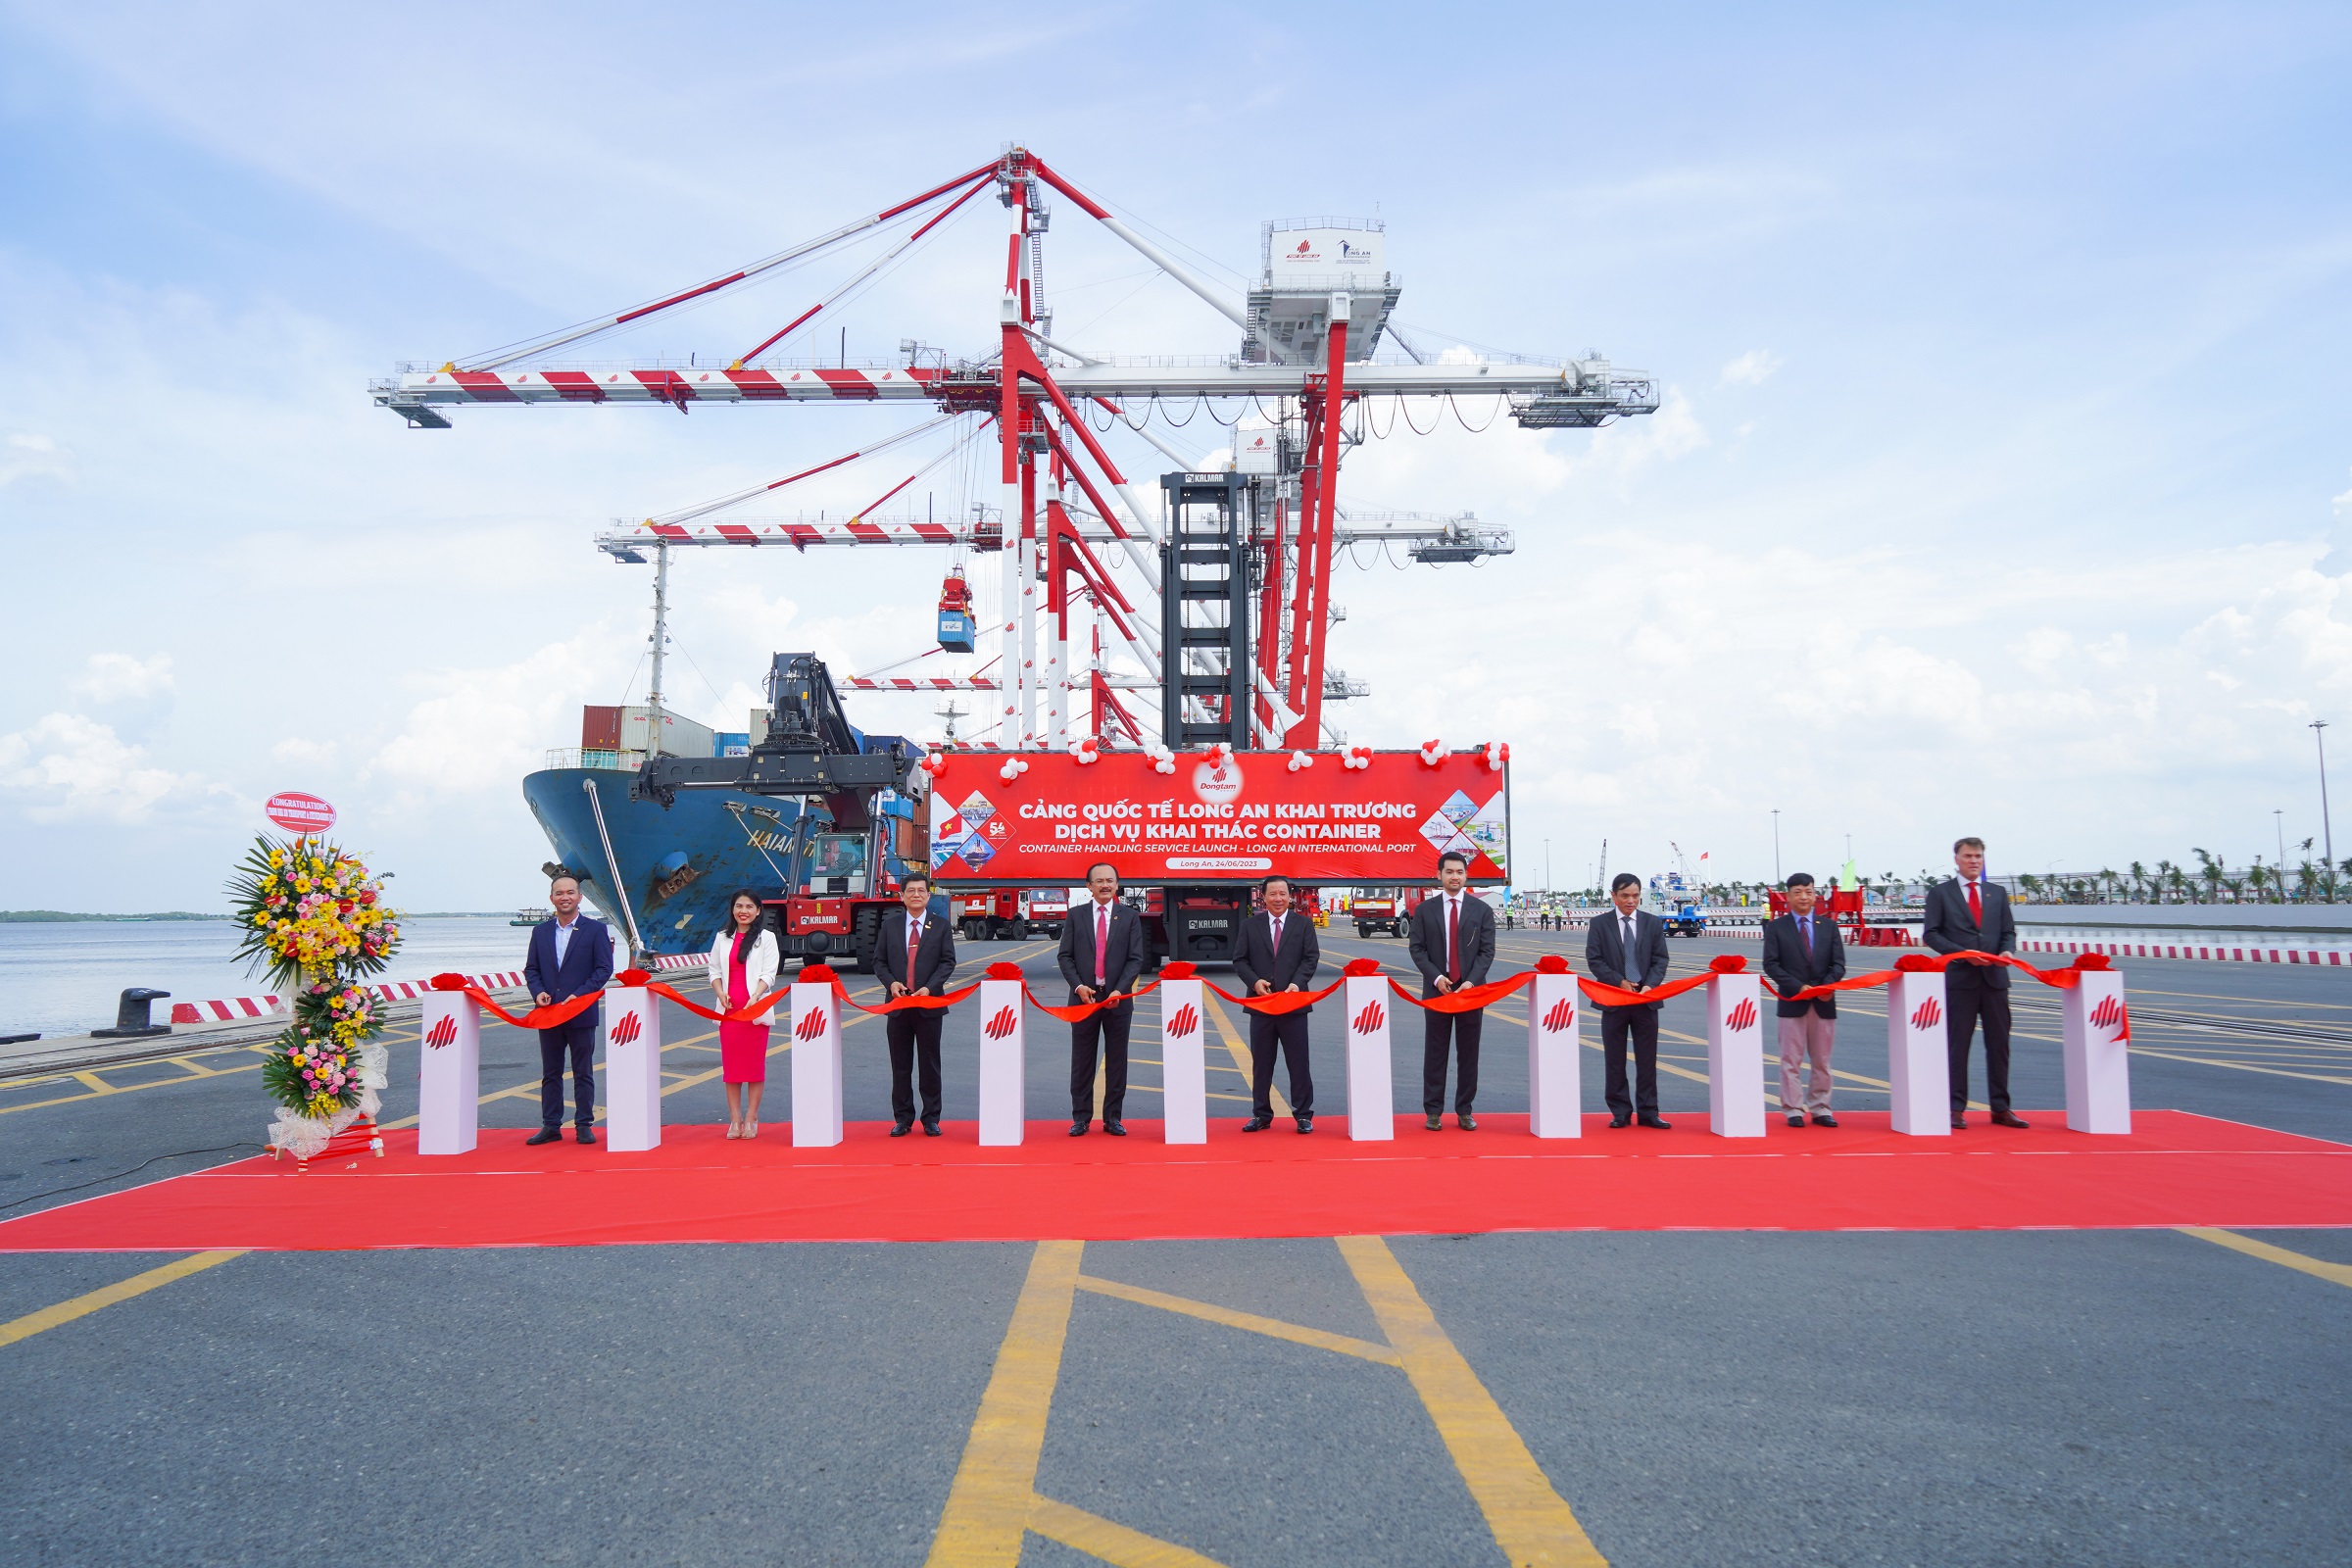 Hãng tàu Hải An khai trương tuyến vận tải container tại Cảng Quốc tế Long An